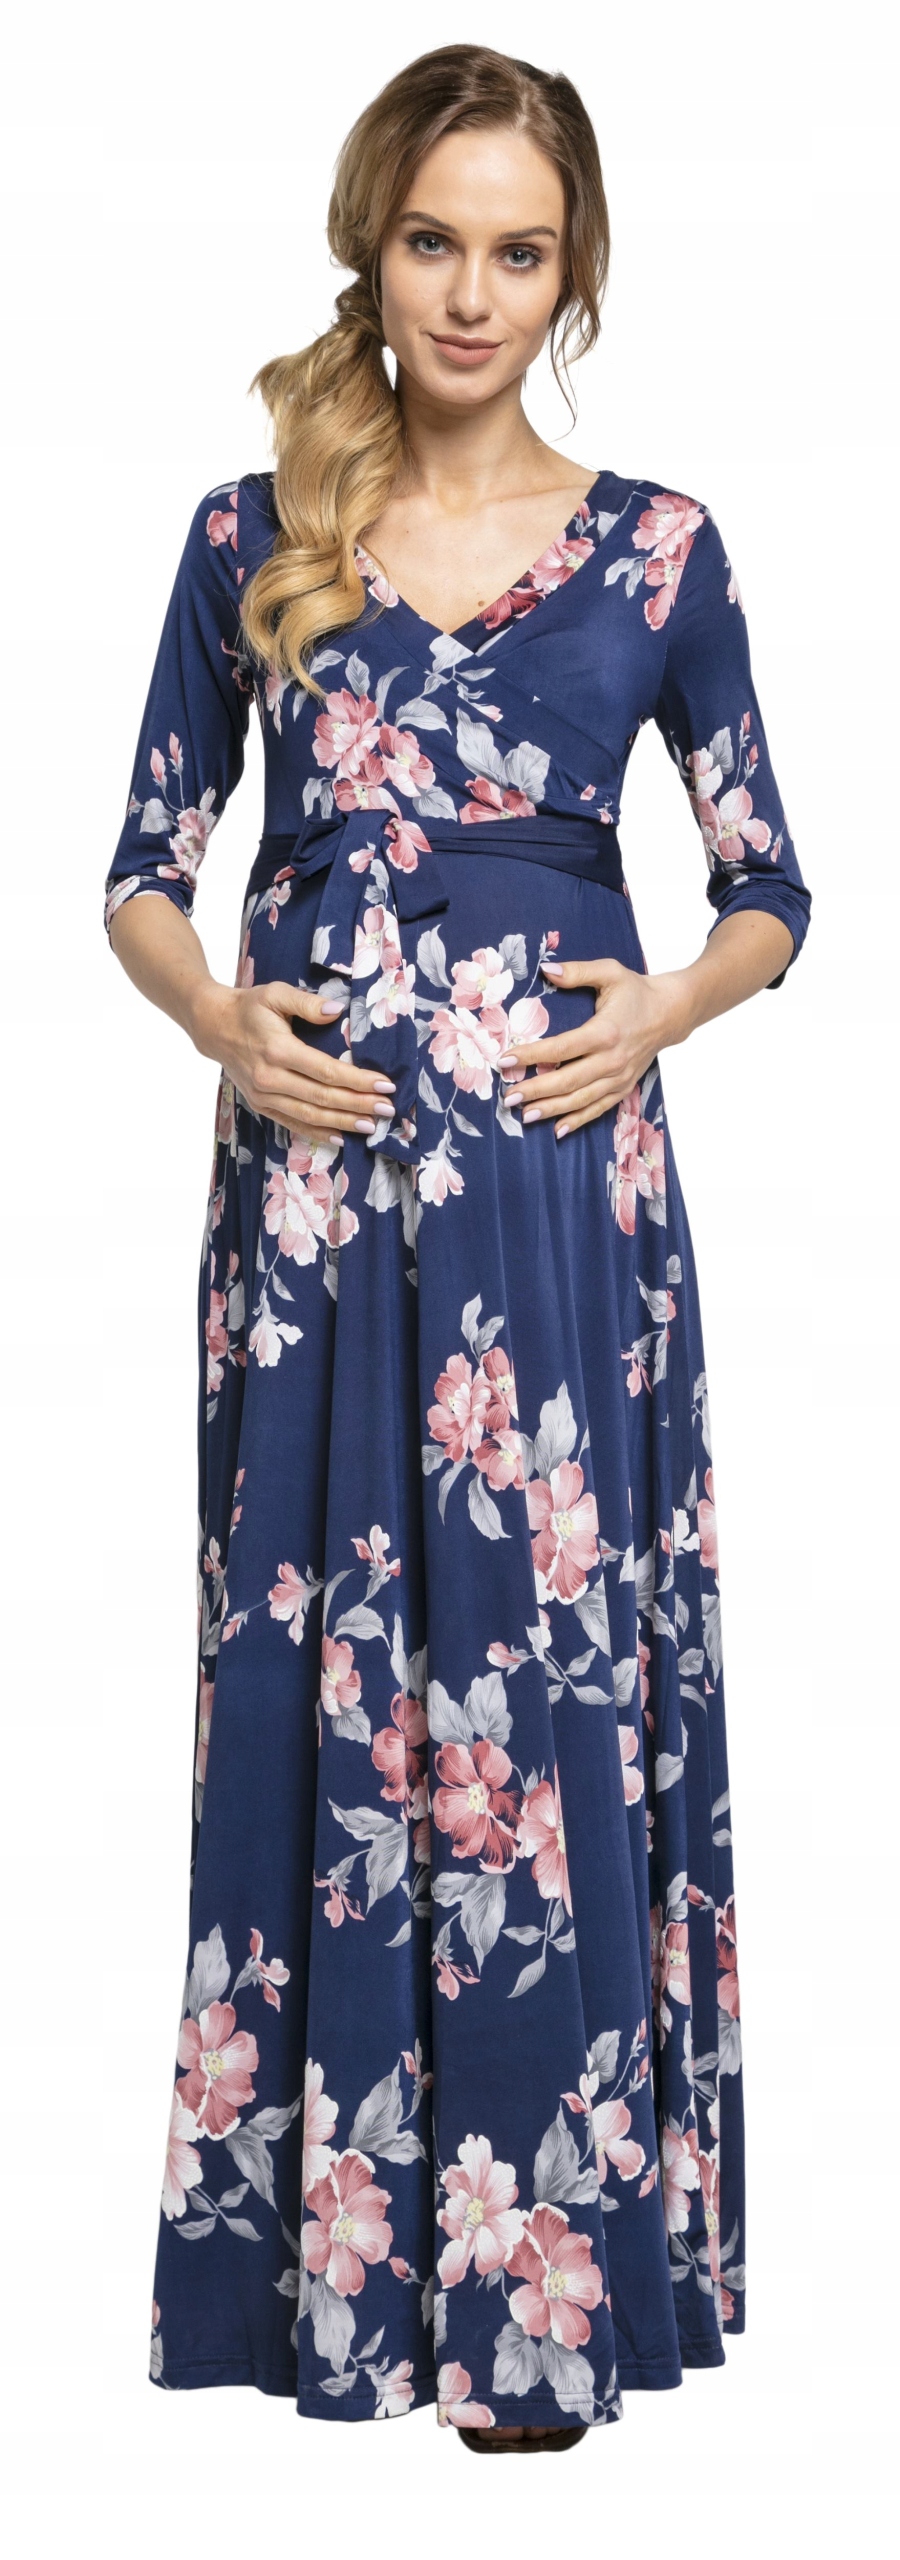 Летнее платье макси для беременных 608